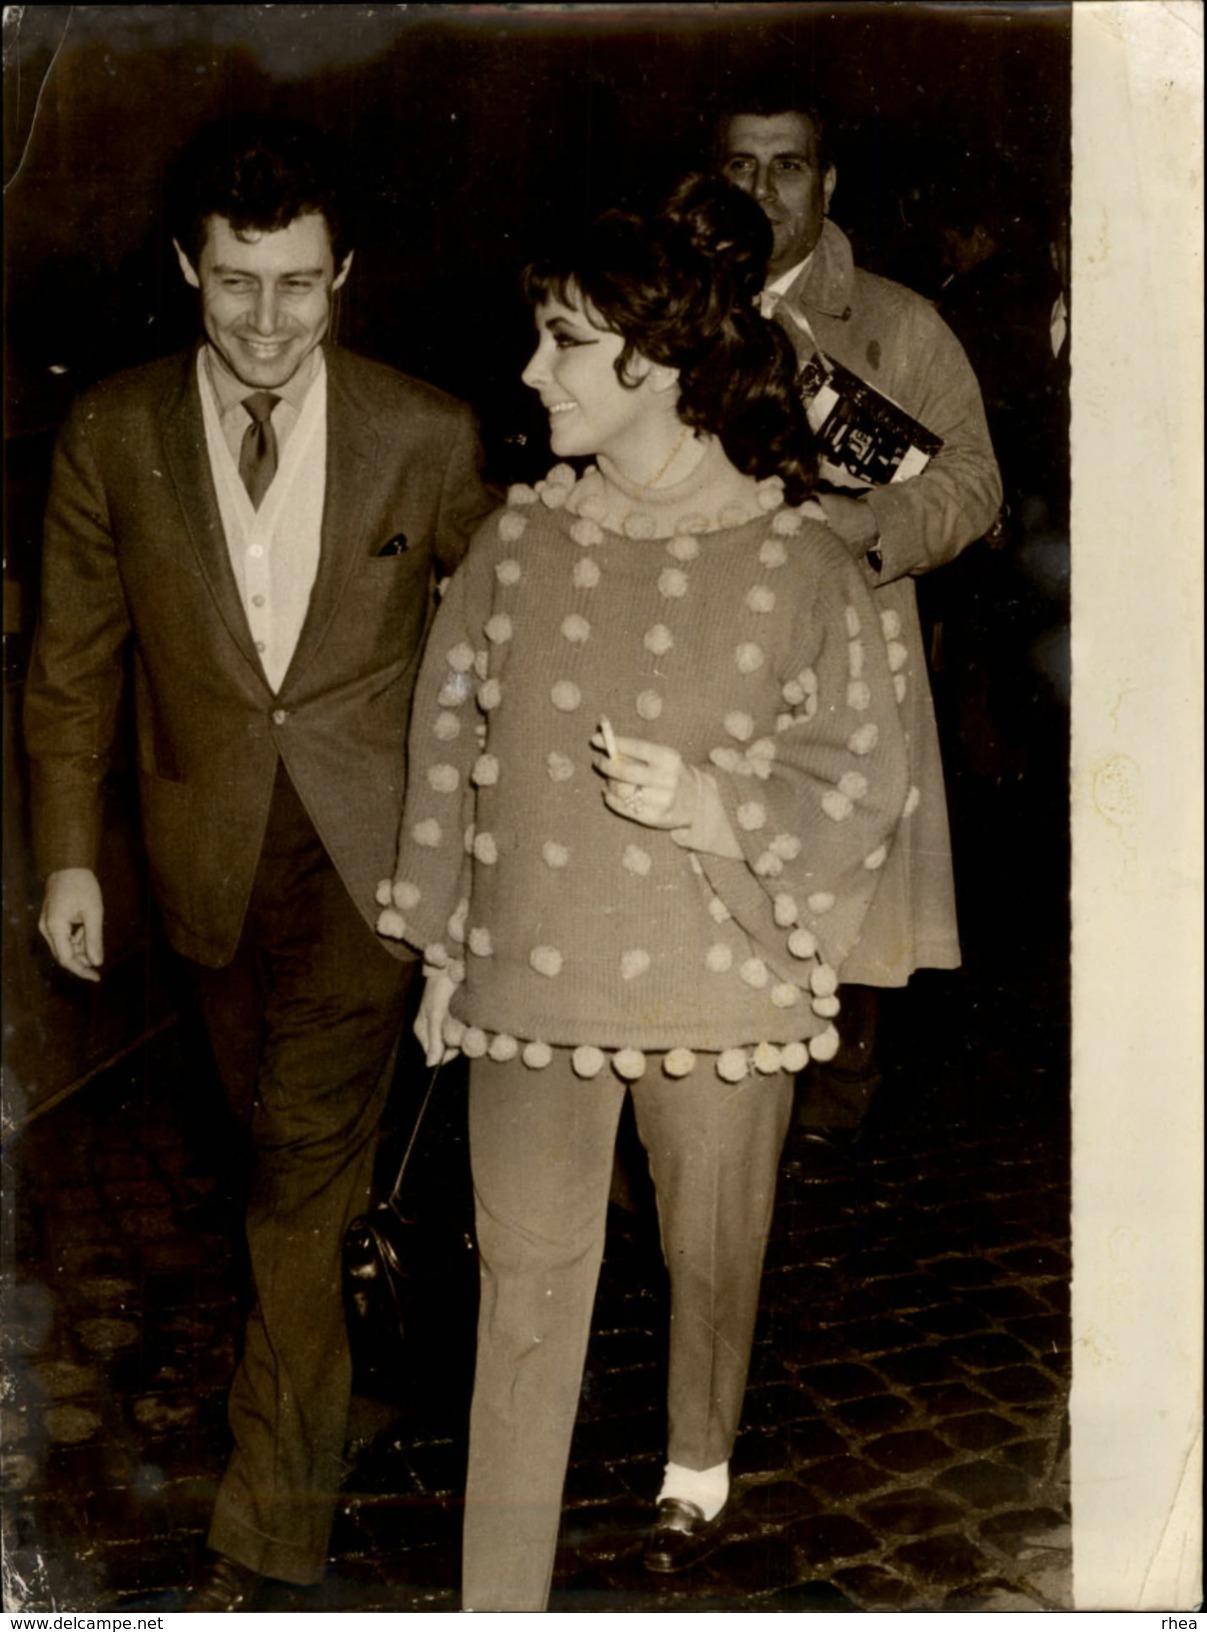 PHOTO - Photo De Presse - LIZ TAYLOR - Actrice - Eddie Fischer - 1962 - ROME - Célébrités